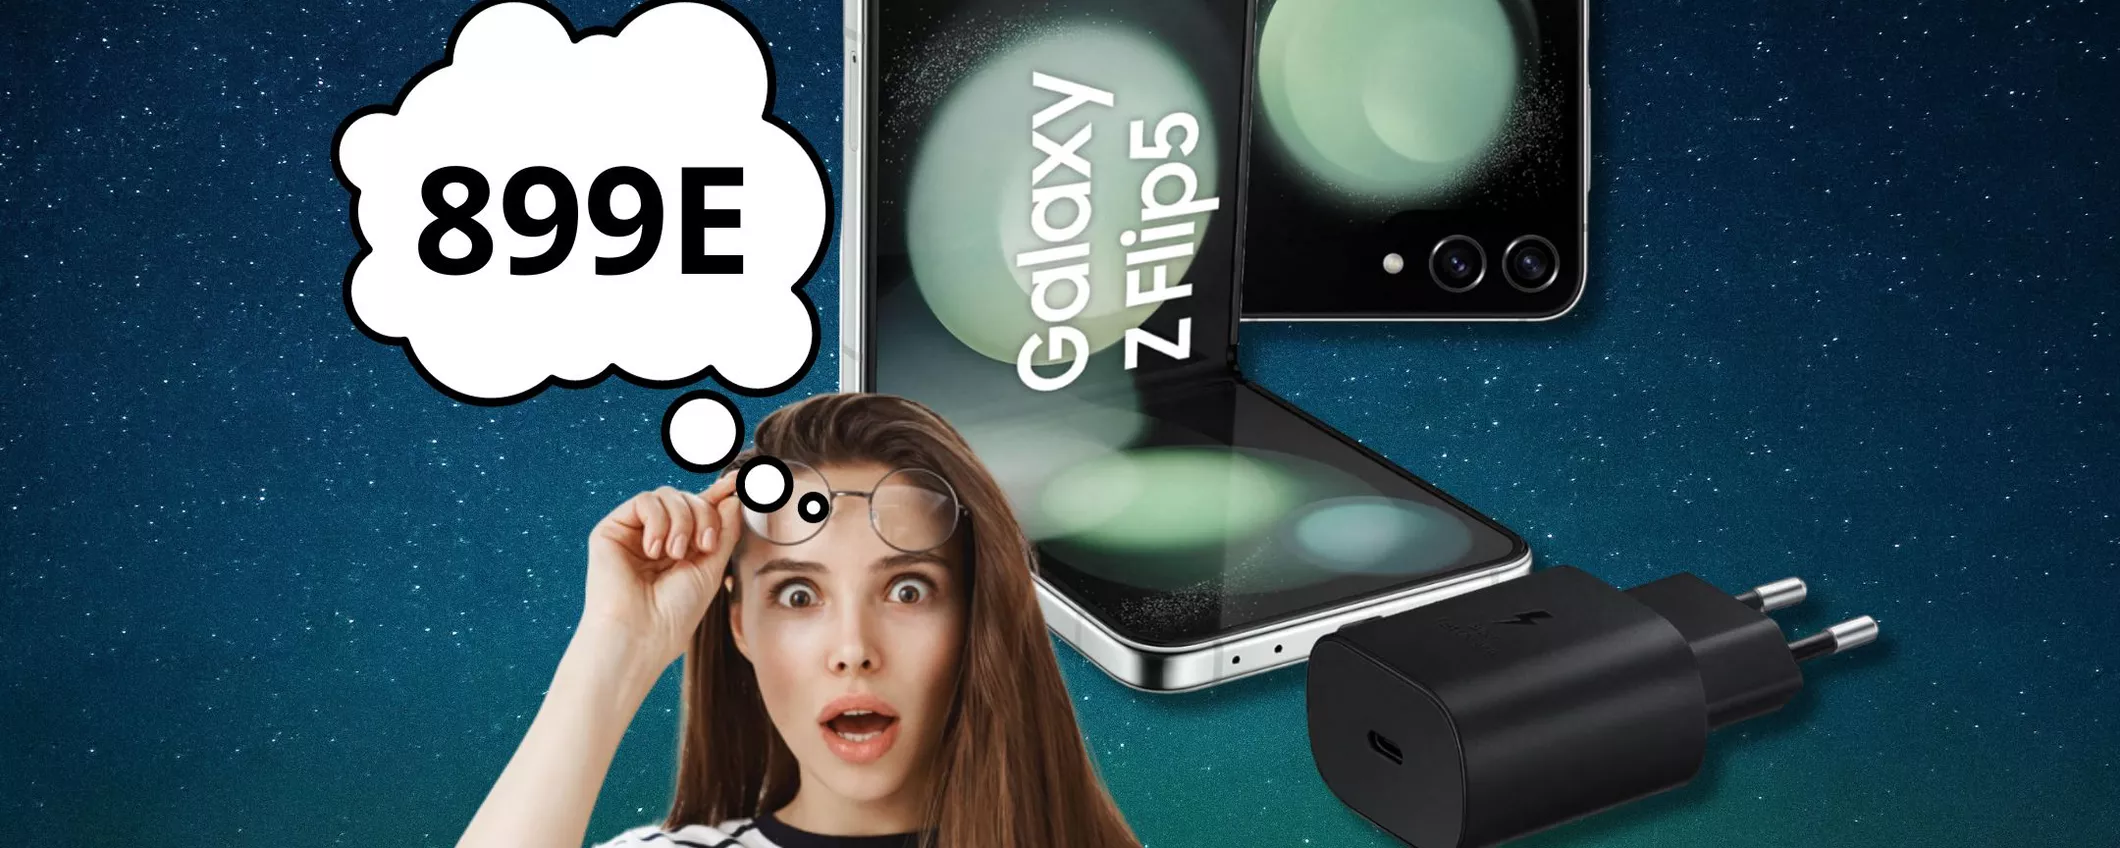 Prendi anche tu uno smartphone pieghevole: Samsung Galaxy Z Flip5 OGGI lo paghi SOLO 899 euro!